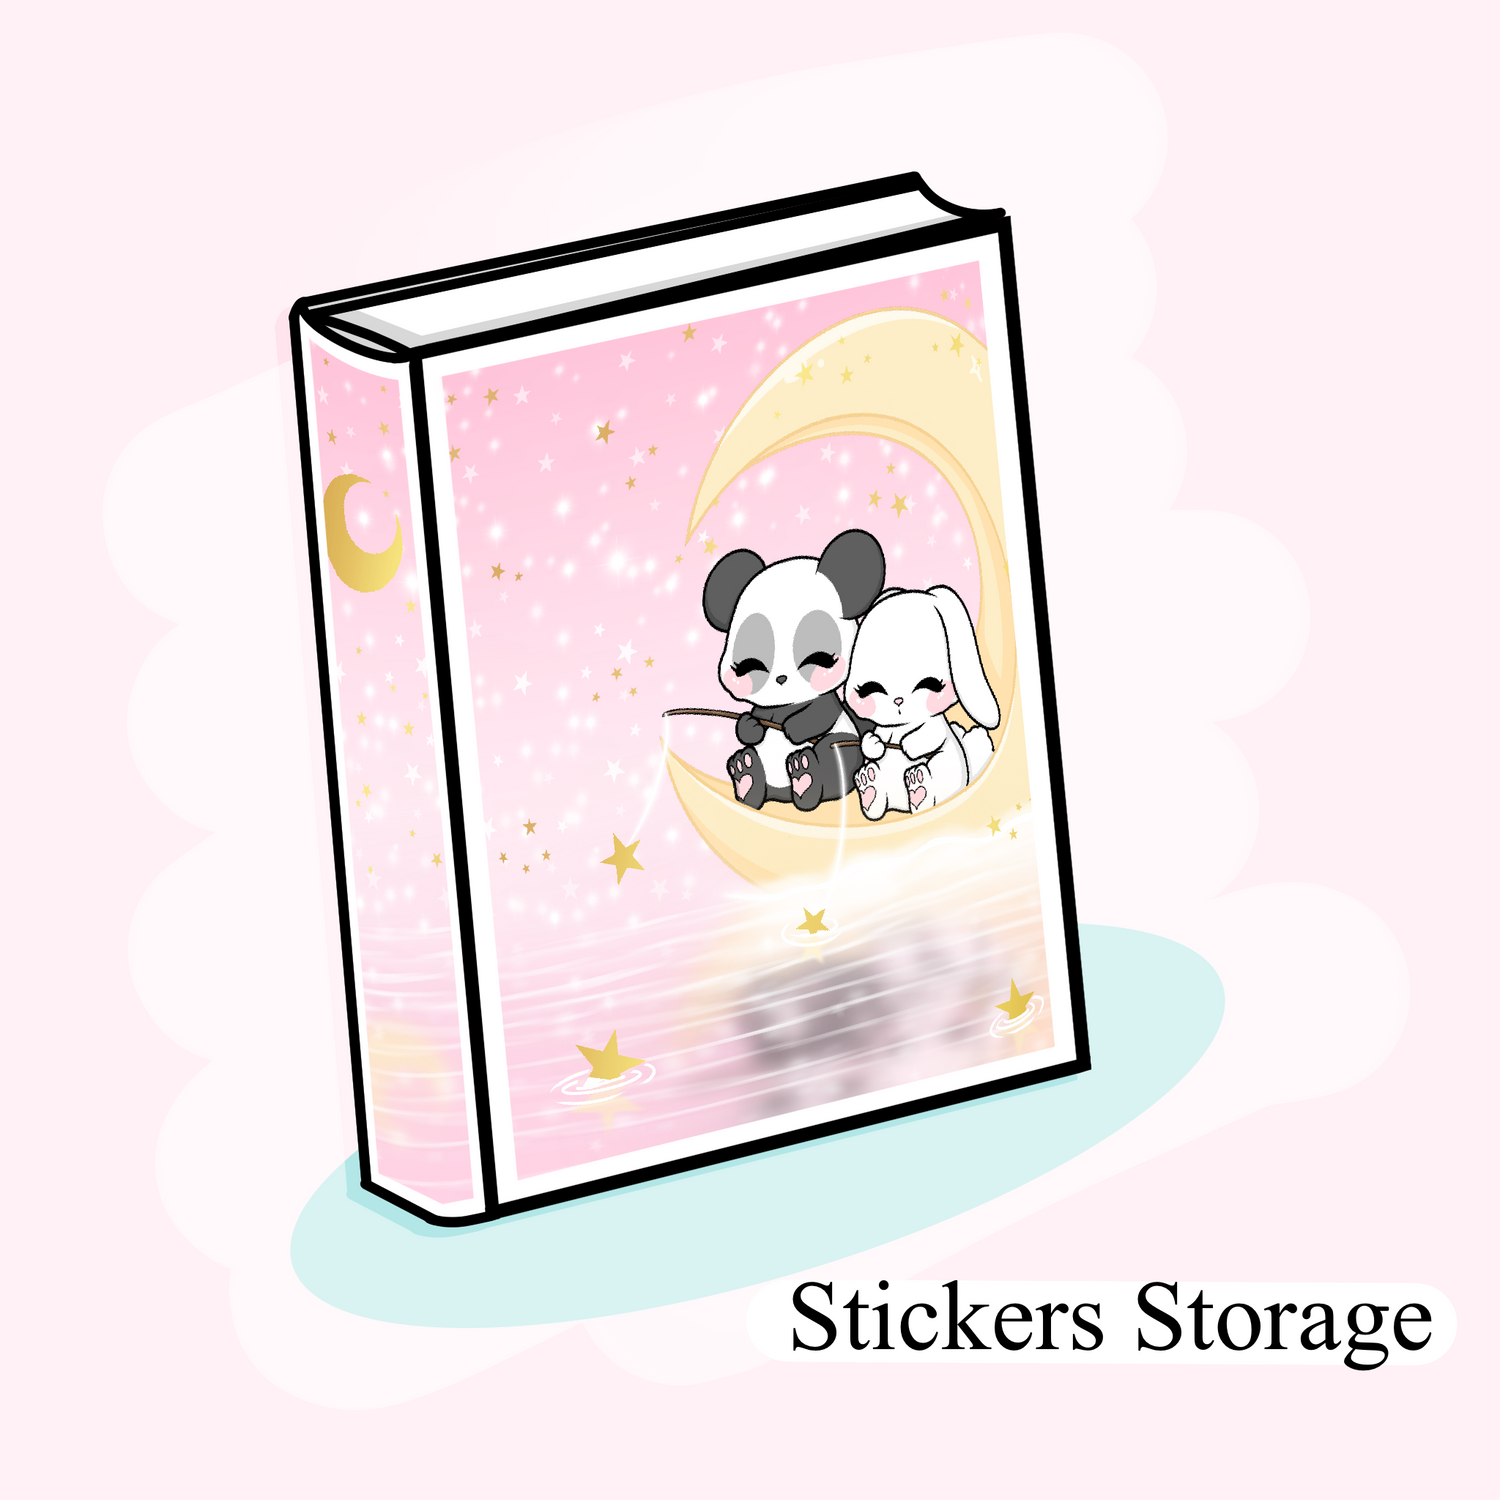 Stickers Storage